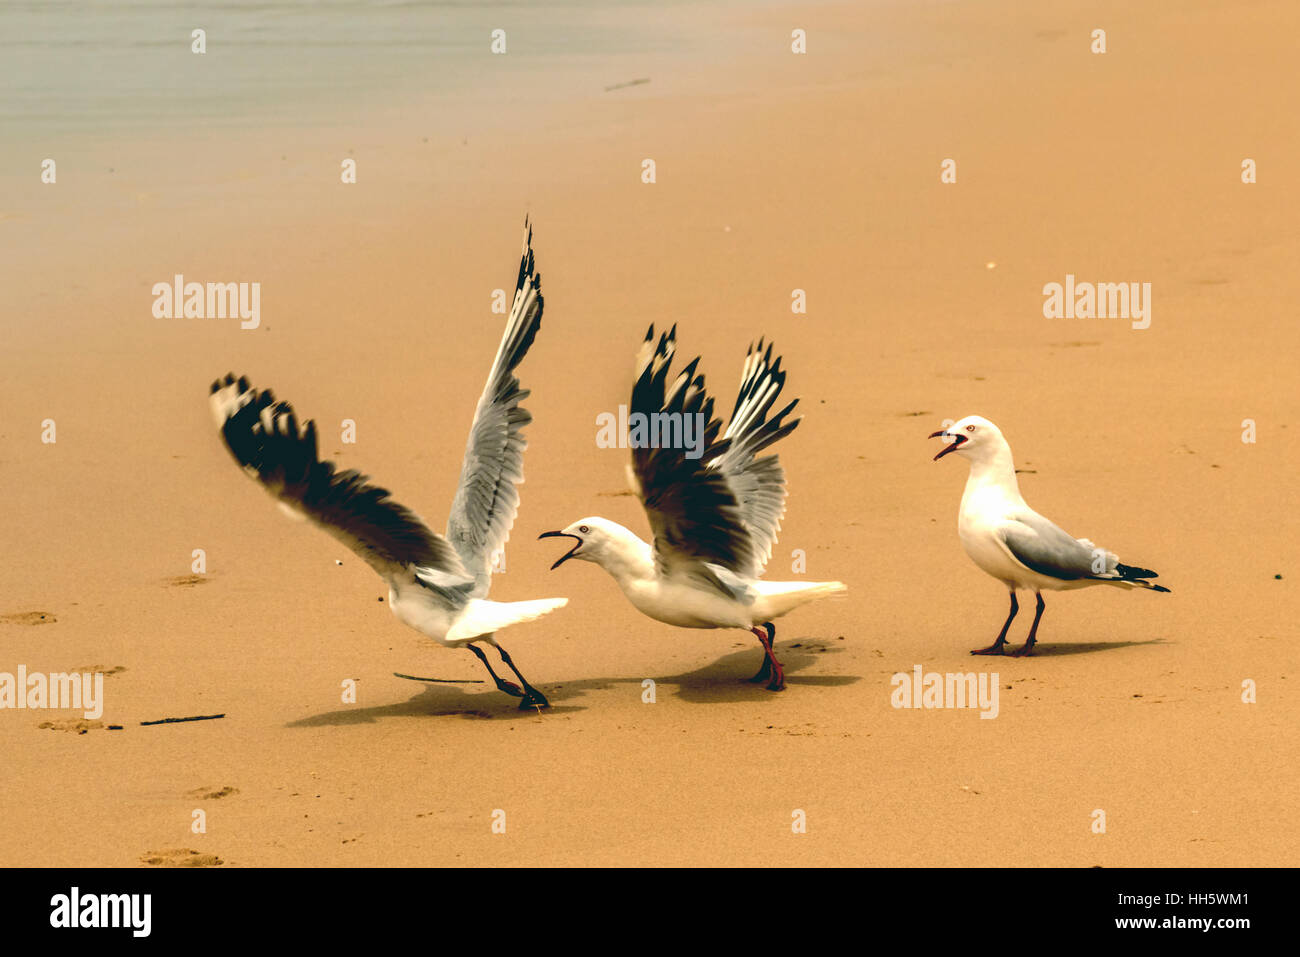 Seagulls fighting on beach Stock Photo